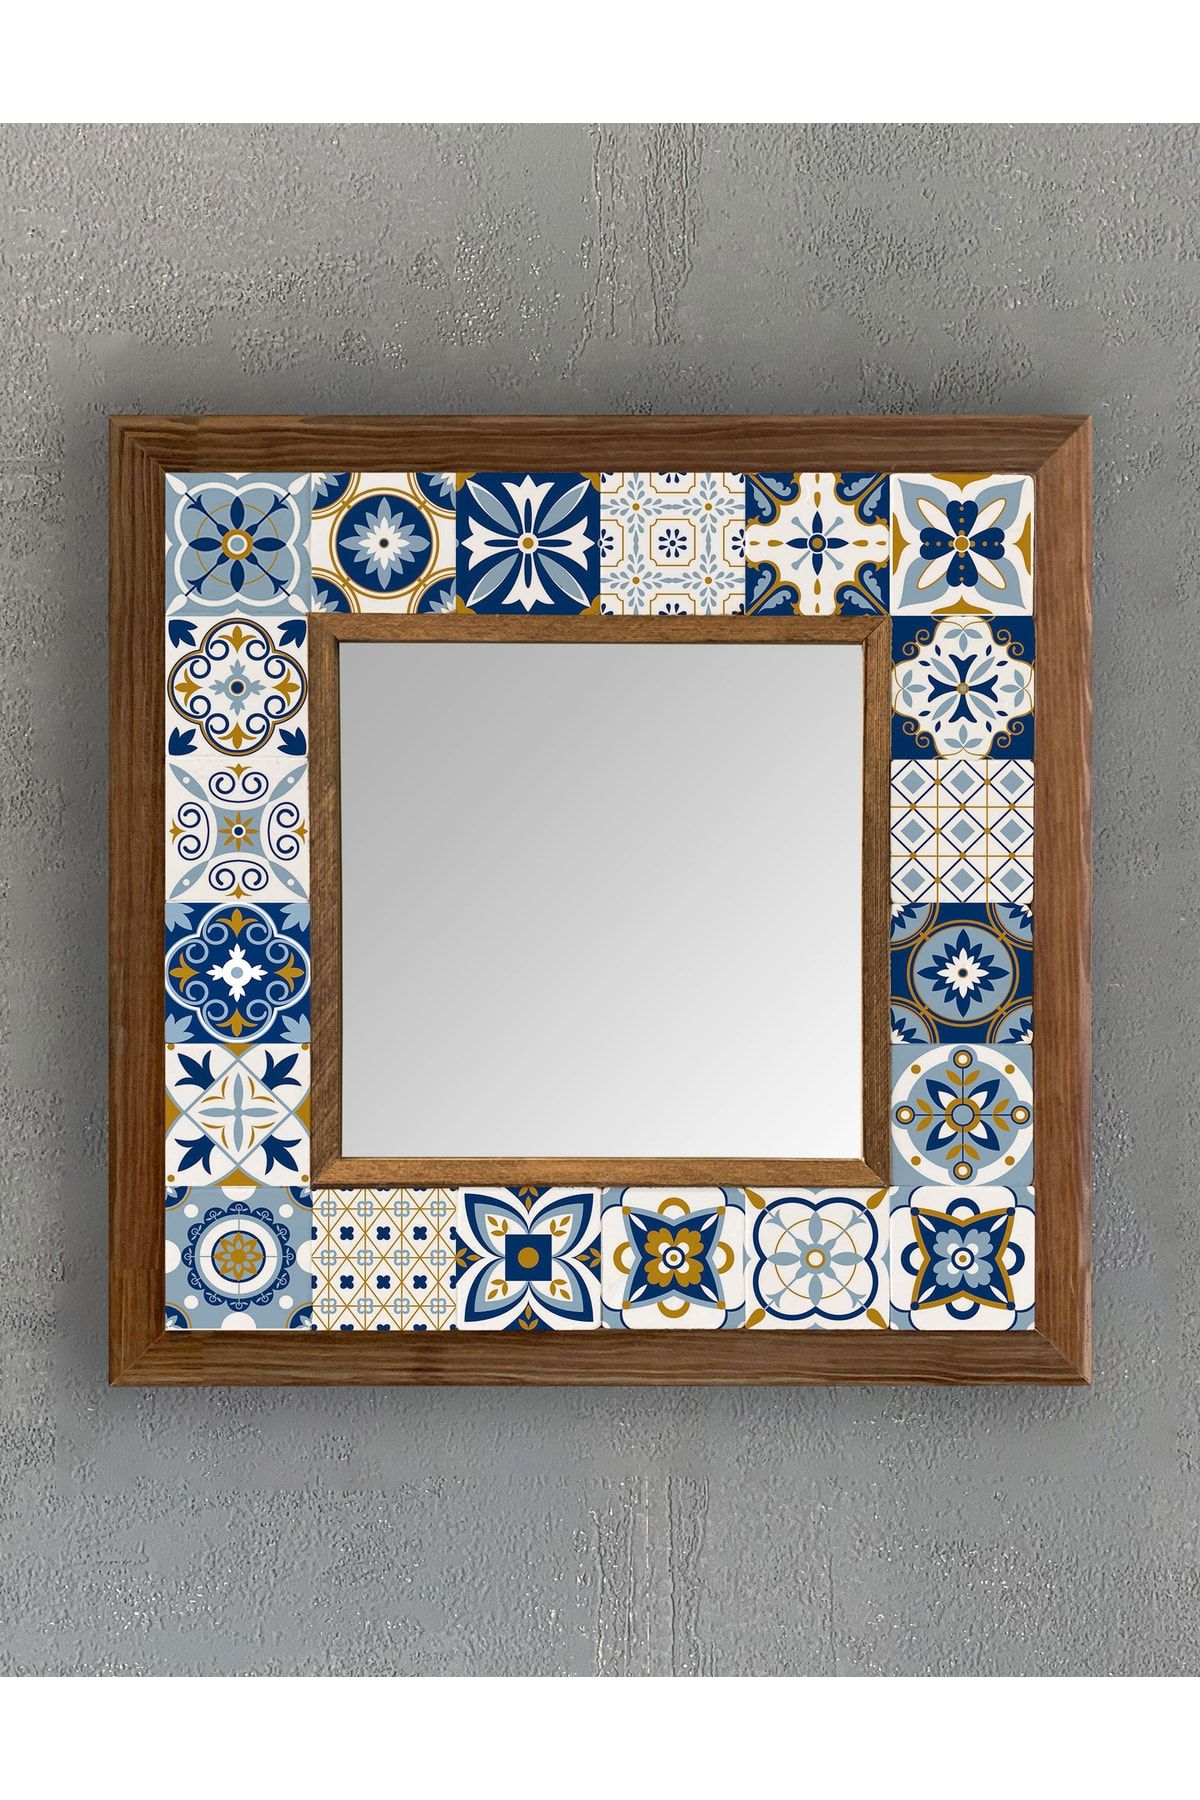 Oscar Stone Decor Masif (ahşap) Çerçeveli Mozaik Taş Ayna 33x33 Cm Mavi Sarı Makyaj Aynası